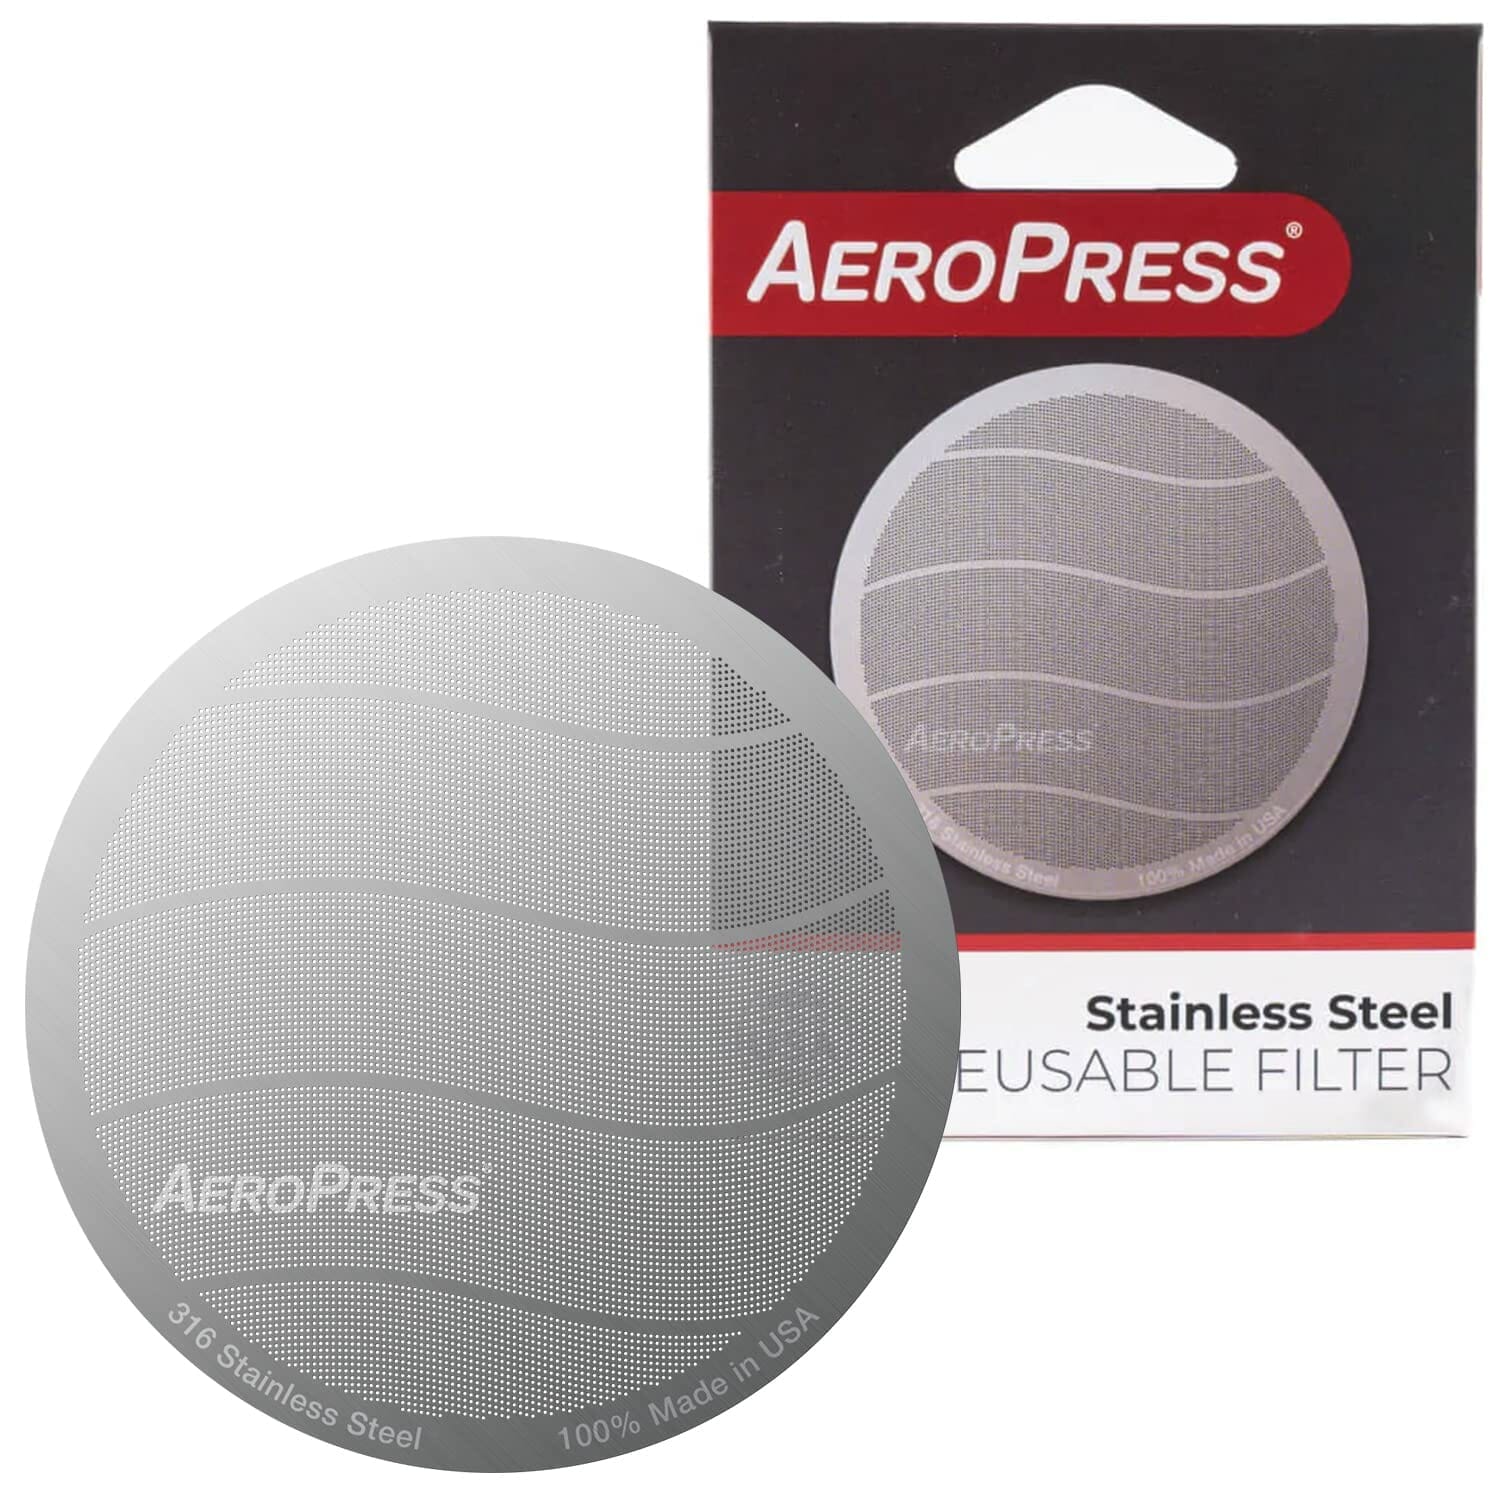 Filtros alternativos de acero inoxidable para Aeropress ¿ Cual es